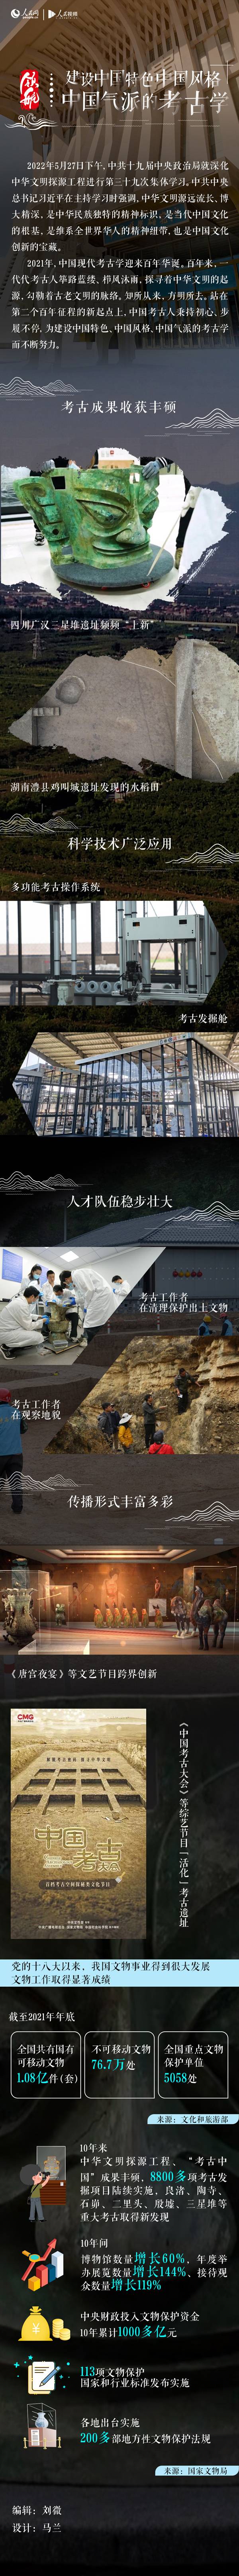 [领航 | 建设中国特色中国风格中国气派的考古学-泛亚电竞